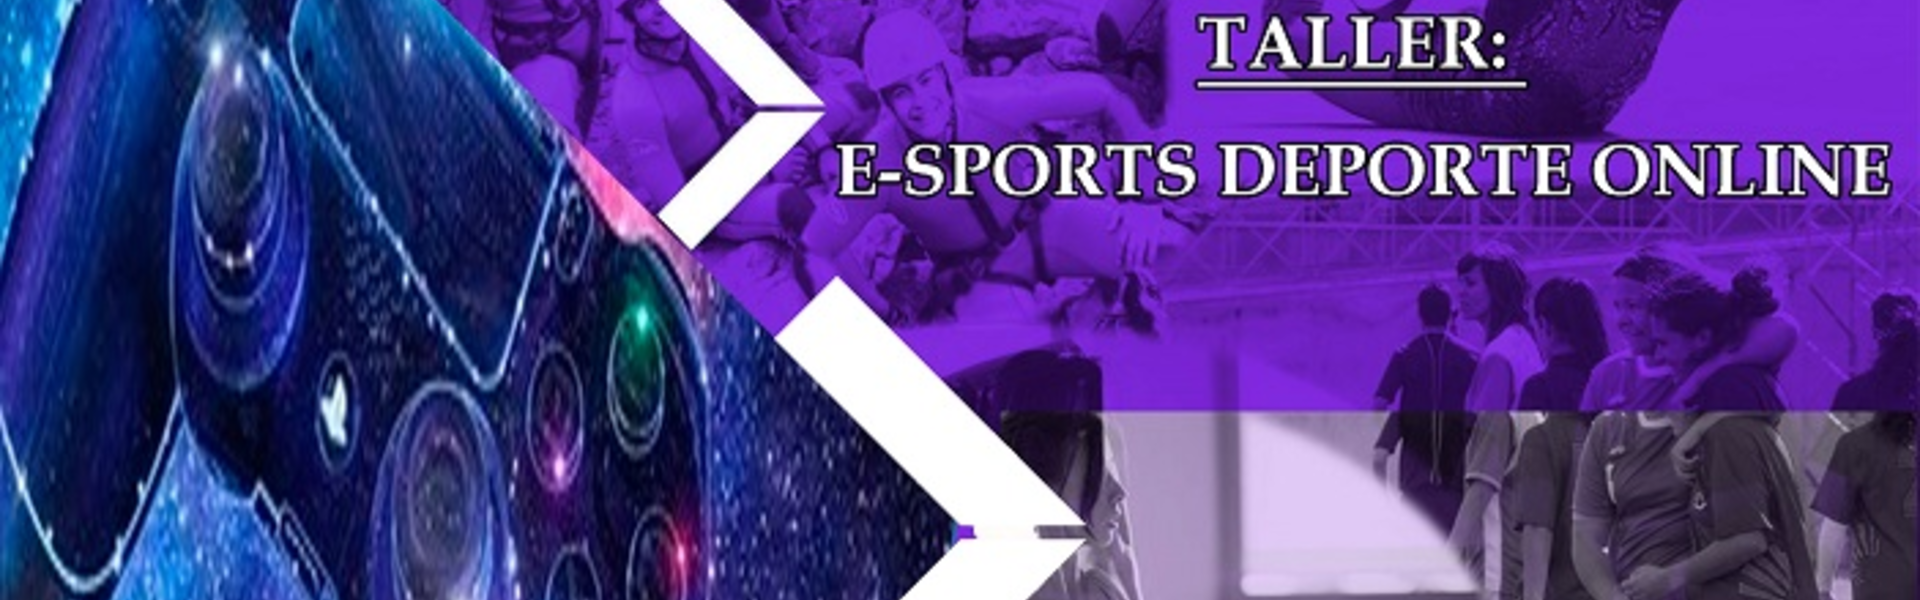 Cabecera Taller eSports Deporte Online